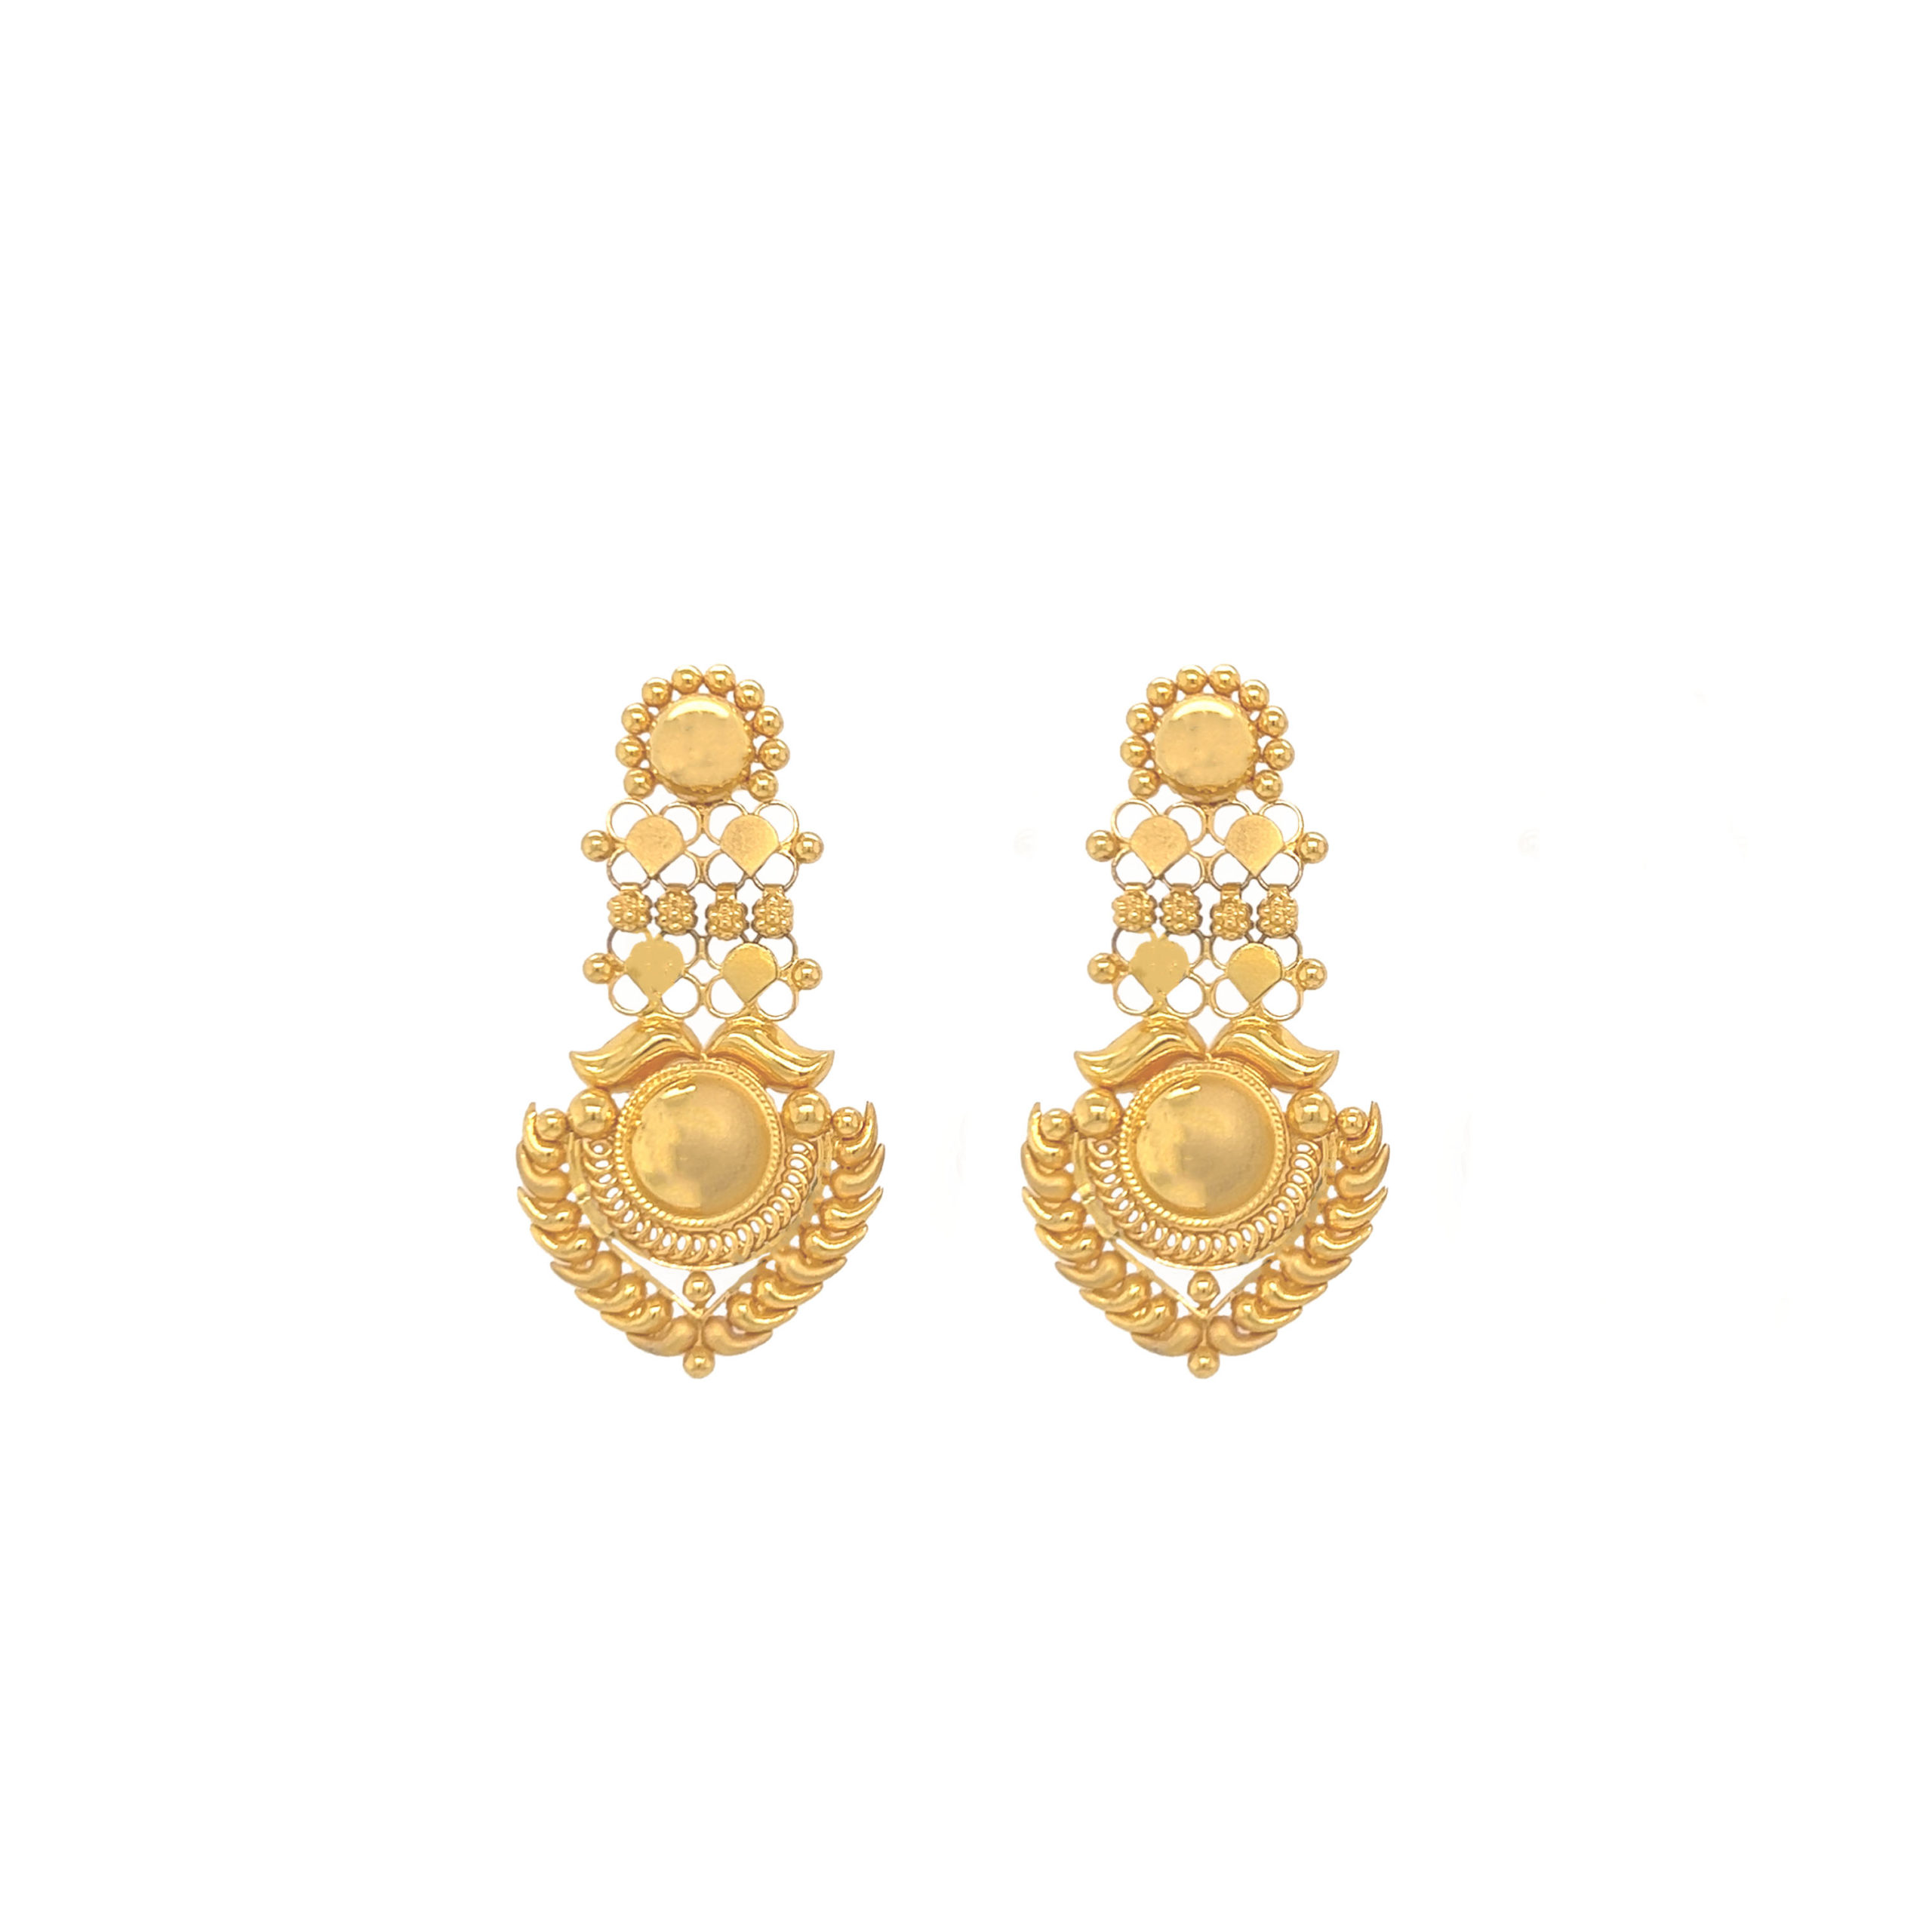 Hazoorilal Jewellers | Best Gold Jewelry Online | Gold Earrings